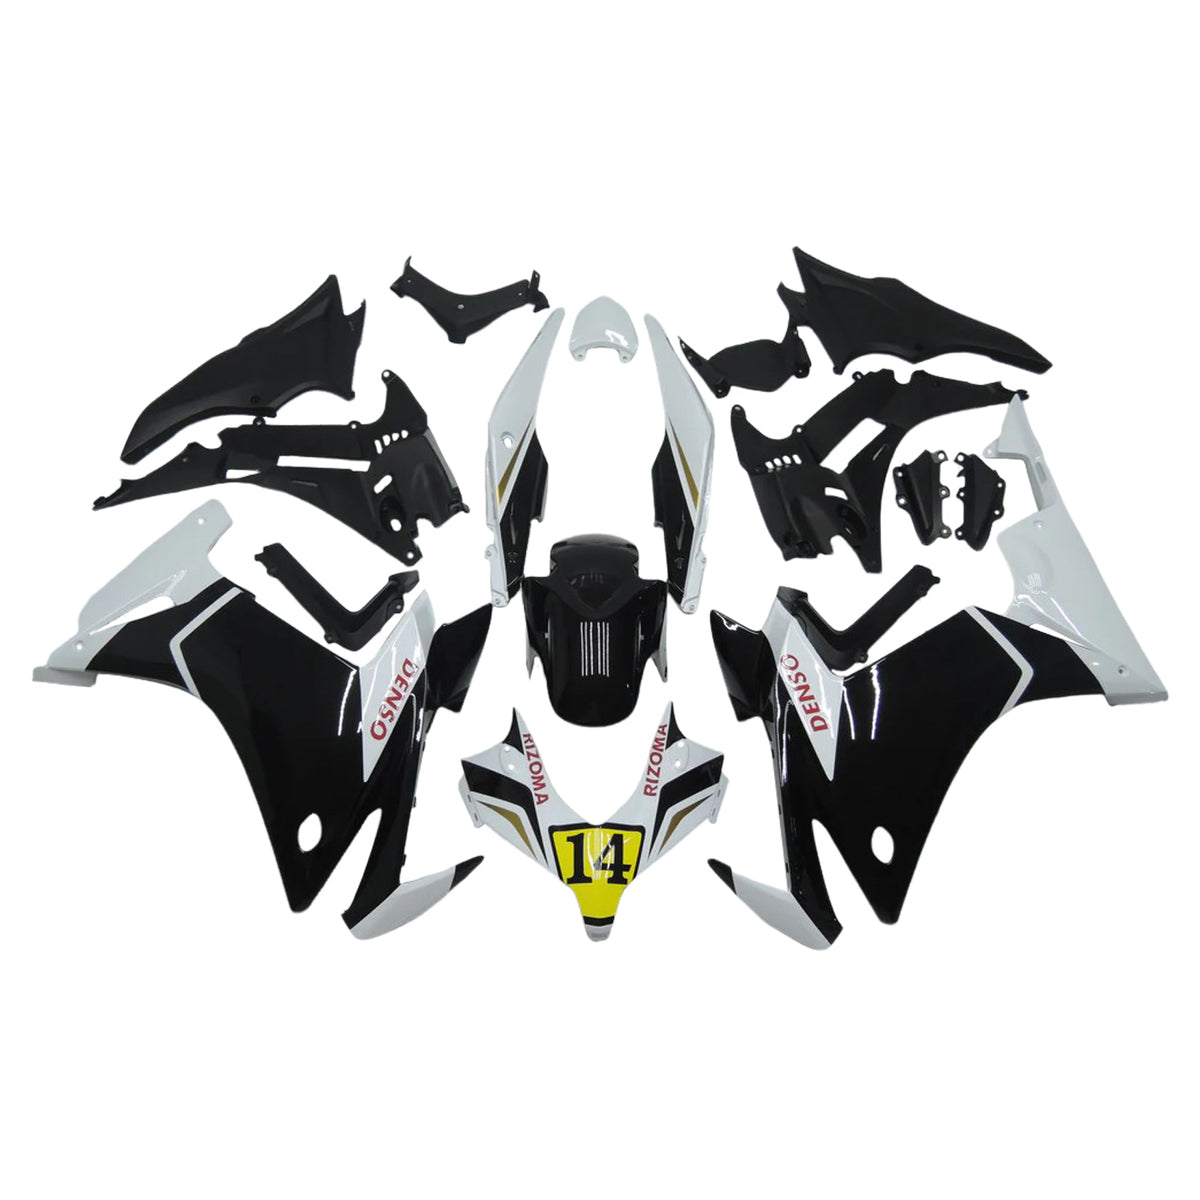 Kit carena Amotopart 2013-2015 Honda CBR500R bianco nero